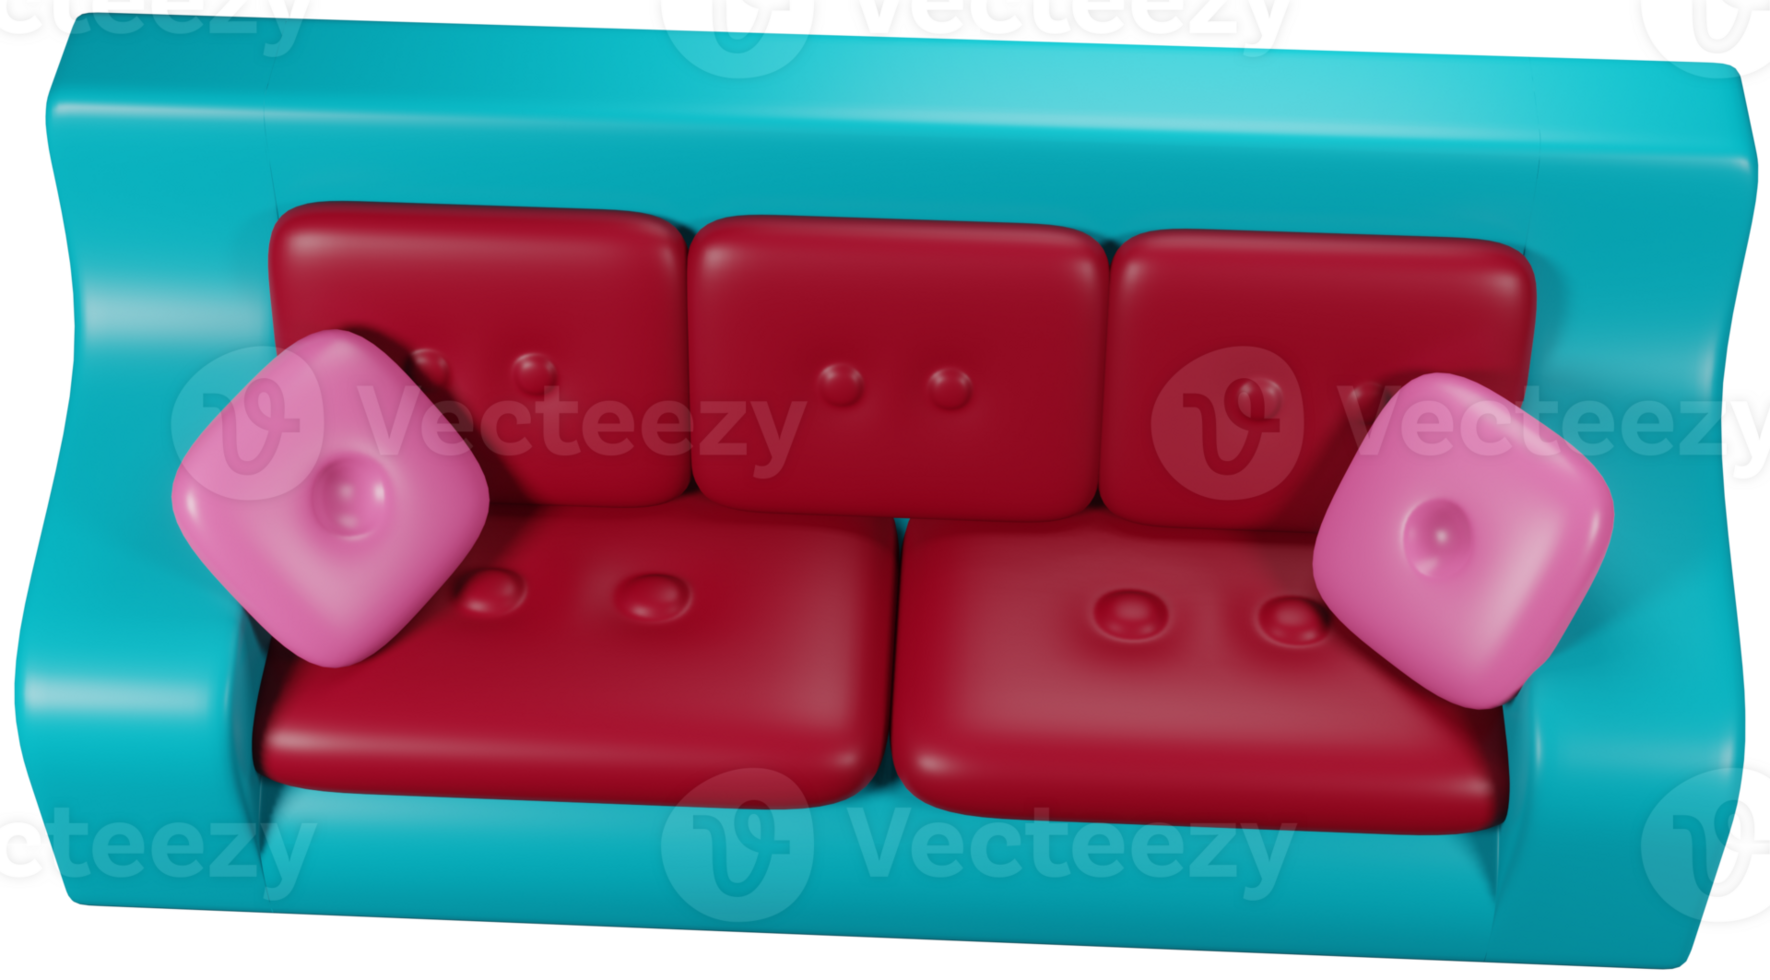 3d illustratie geven meubilair sofa rood blauw met kussens Aan transparant achtergrond png